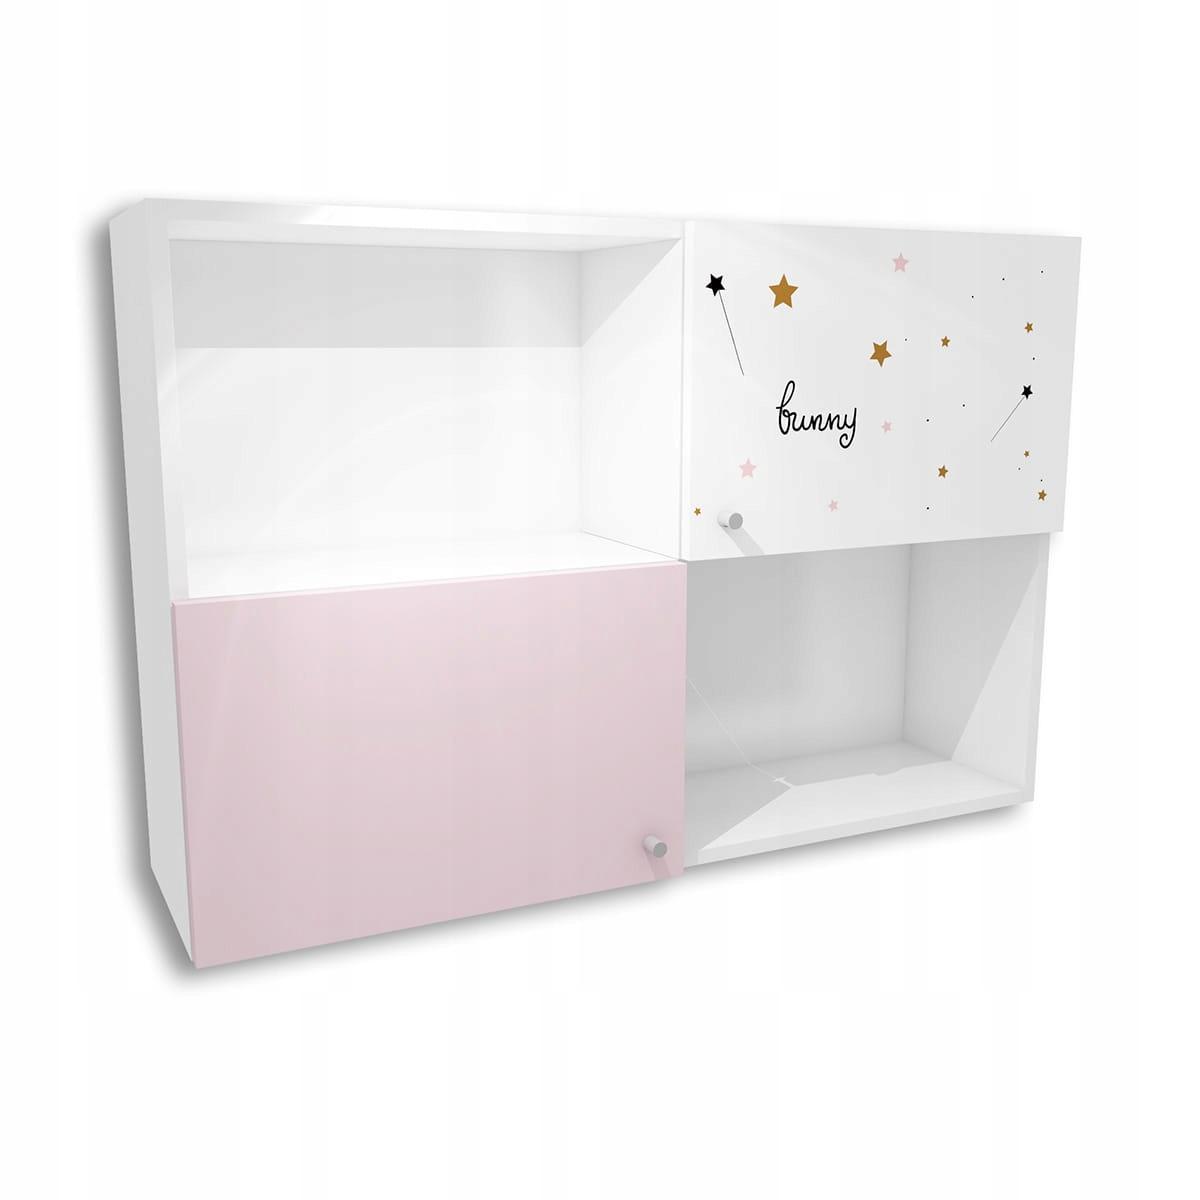 Szafka FAIRY 120x80 cm biało różowa wisząca z grafiką dla dziecka nr. 1